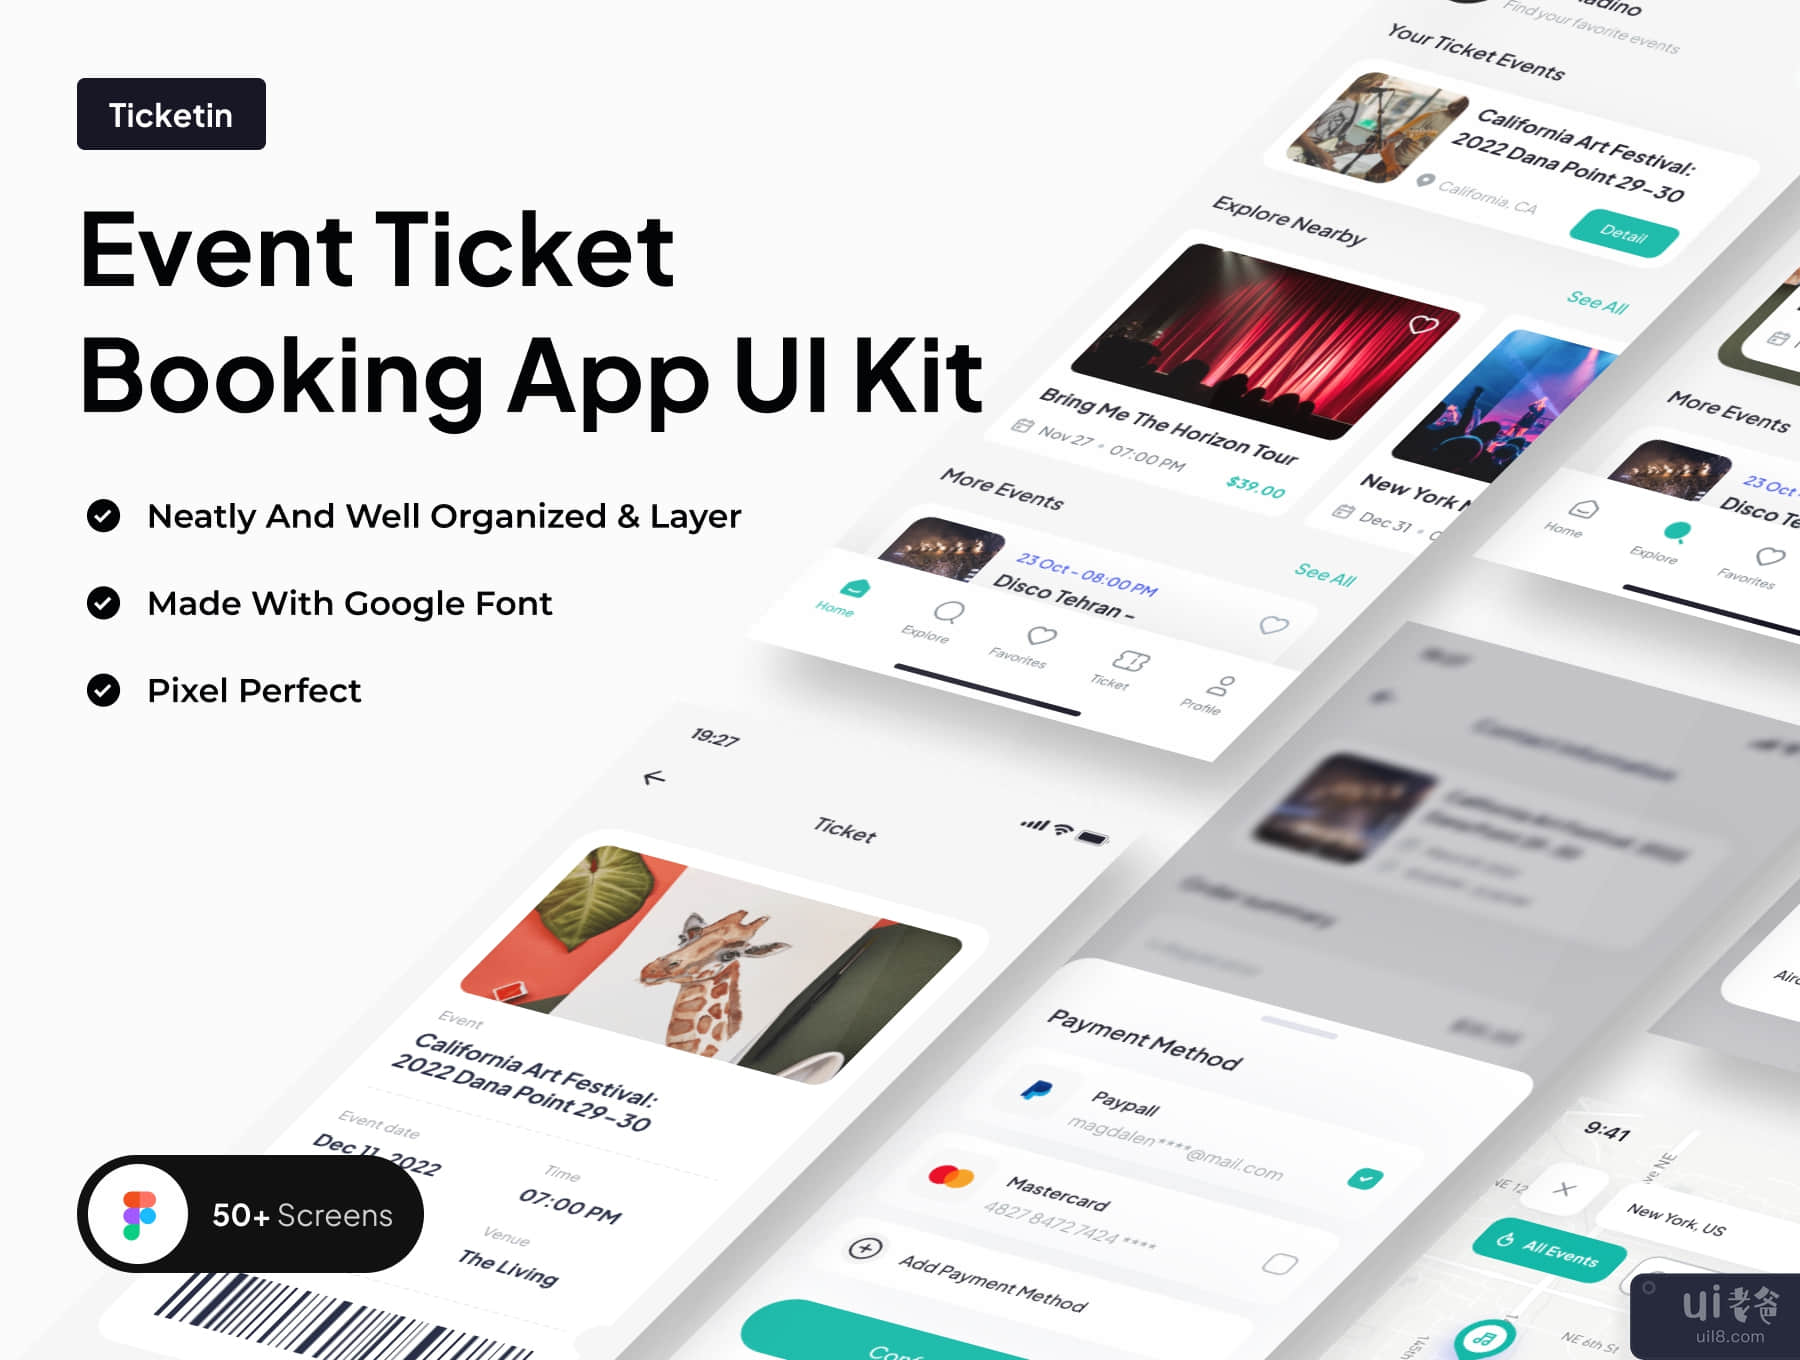 Ticketin - 活动门票预订应用程序 UI 工具包 (Ticketin - Event Ticket Booking App UI Kit)插图5